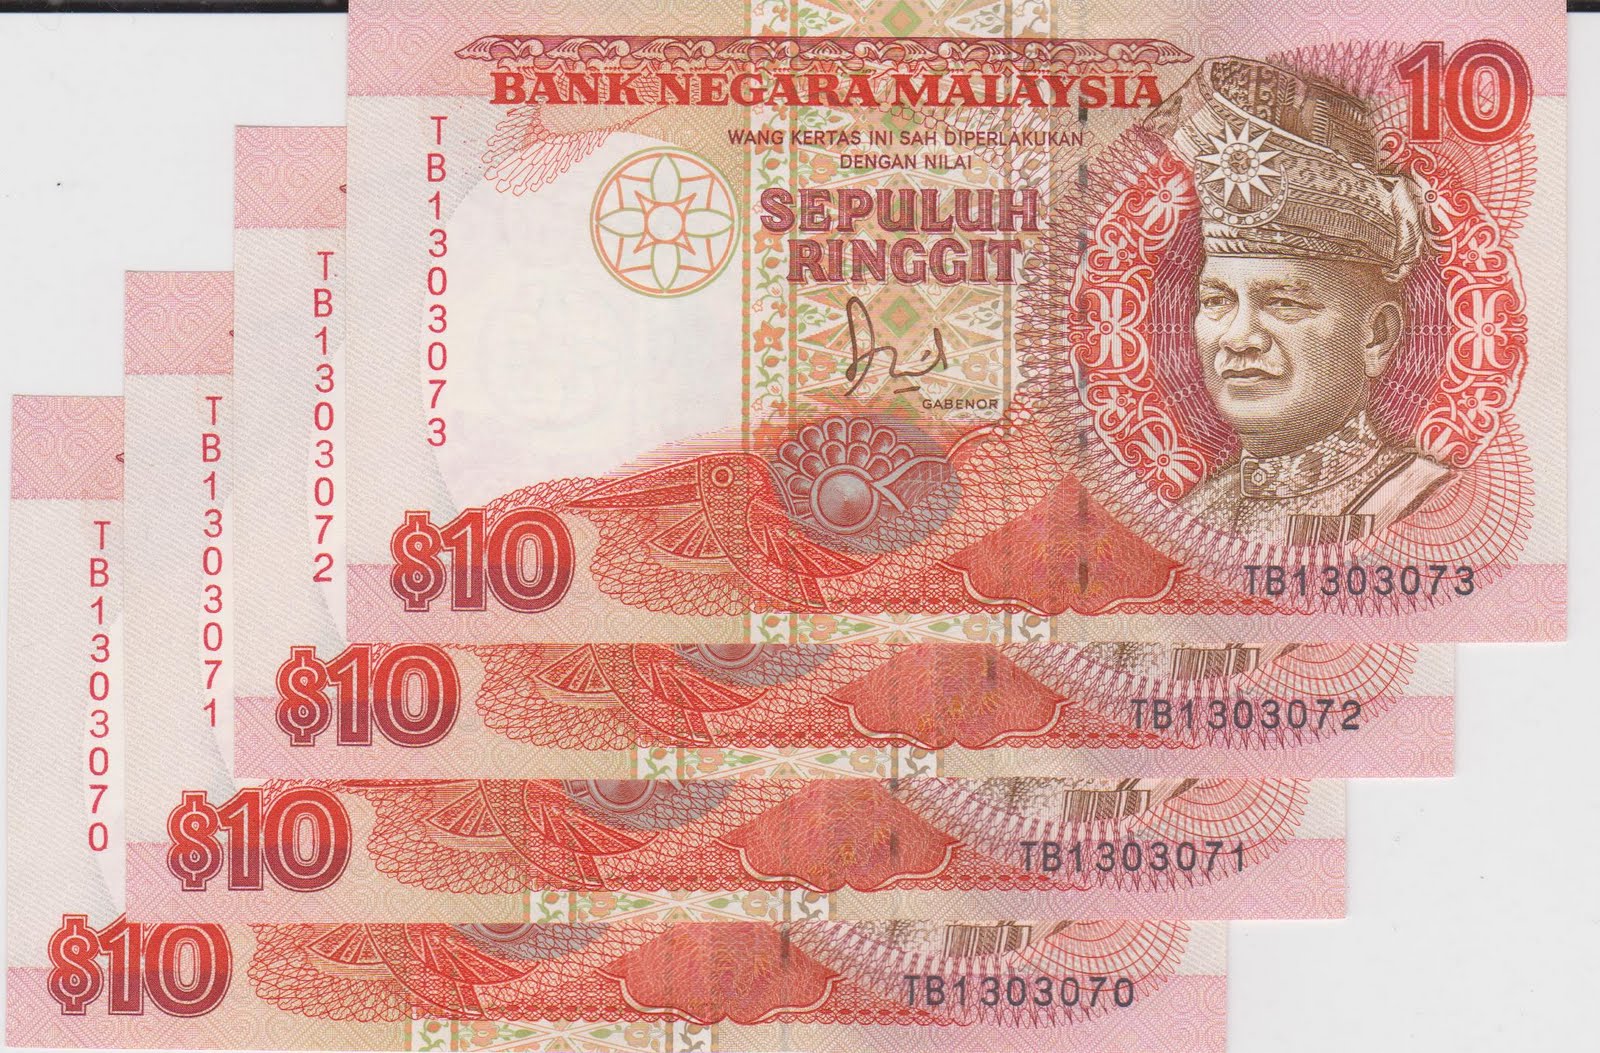 DUIT LAMA BARANG ANTIK Wang Kertas RM10 siri ke 6 